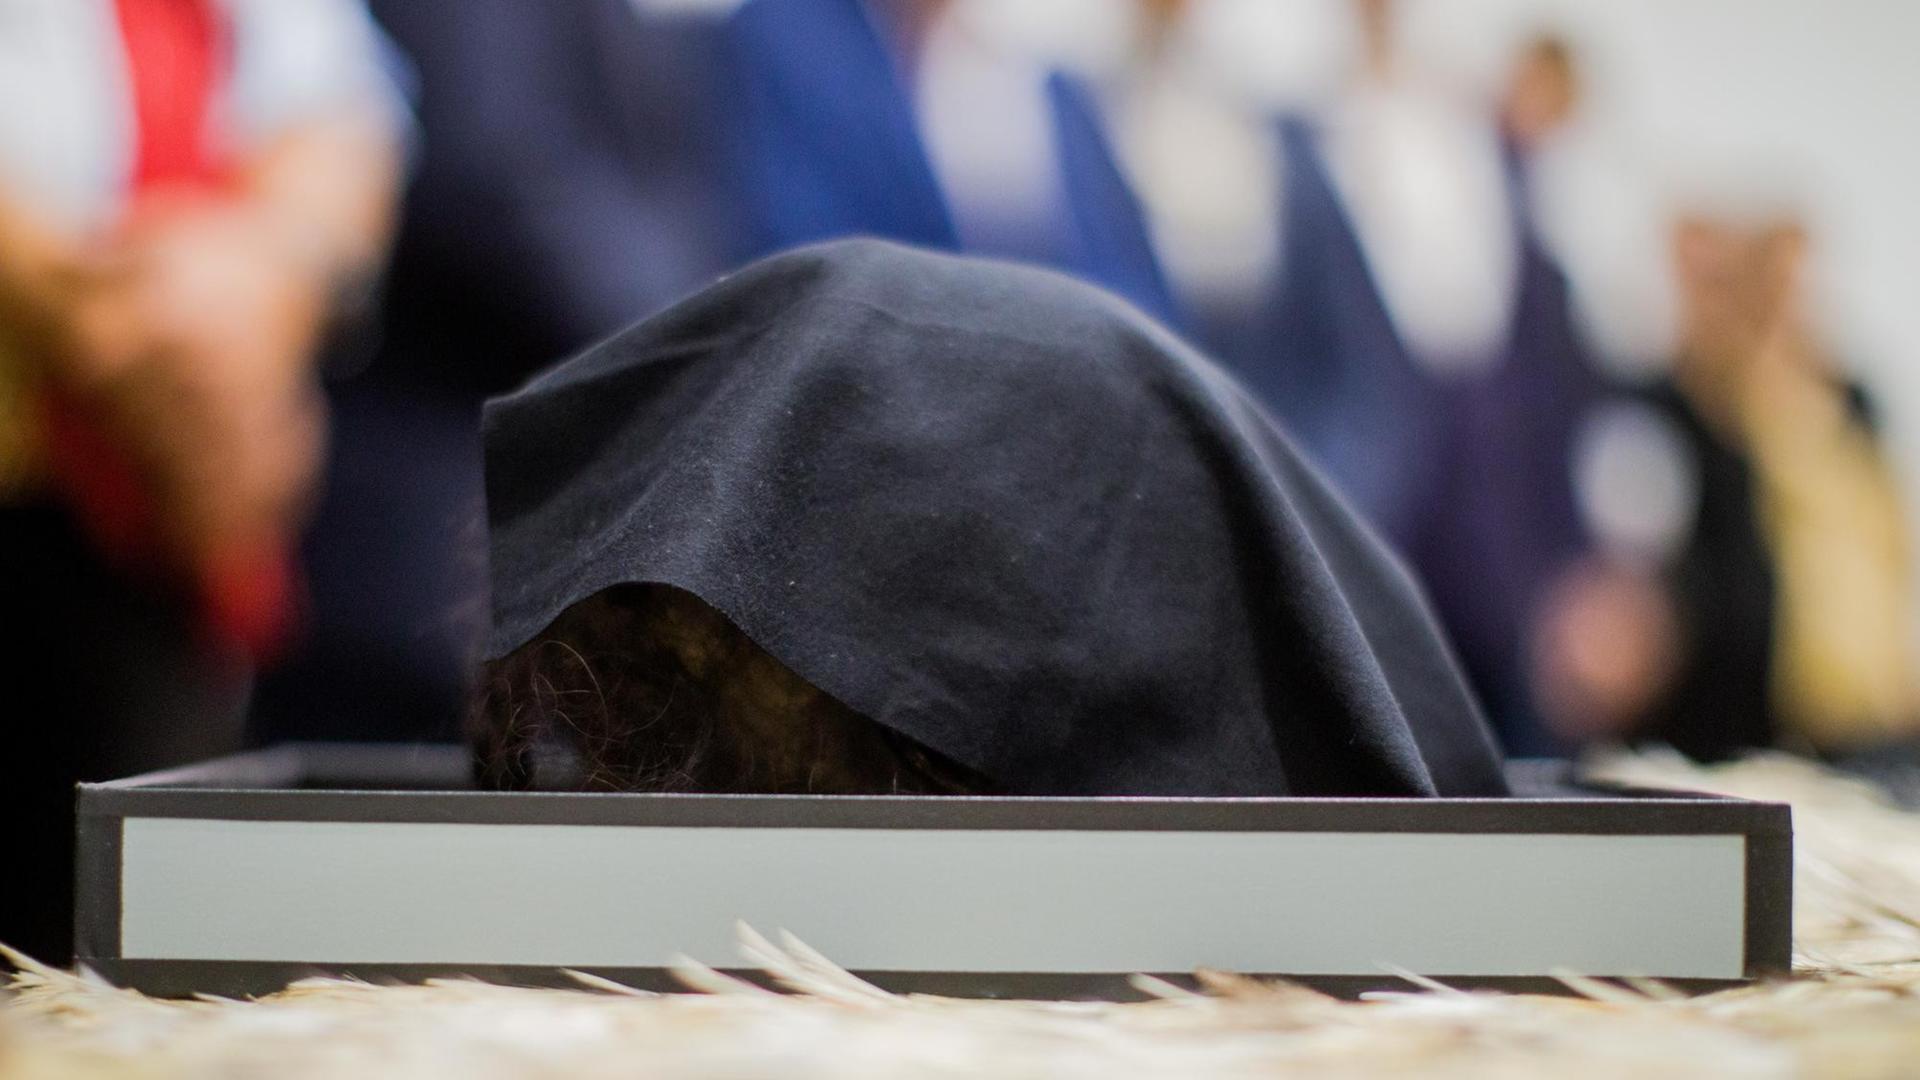 26.06.2018, Nordrhein-Westfalen, Köln: Ein abgedeckter tätowierter, mumifizierter Schädel eines Maori aus Neuseeland, liegt bei einer Übergabezeremonie im Rautenstrauch-Joest-Museum.